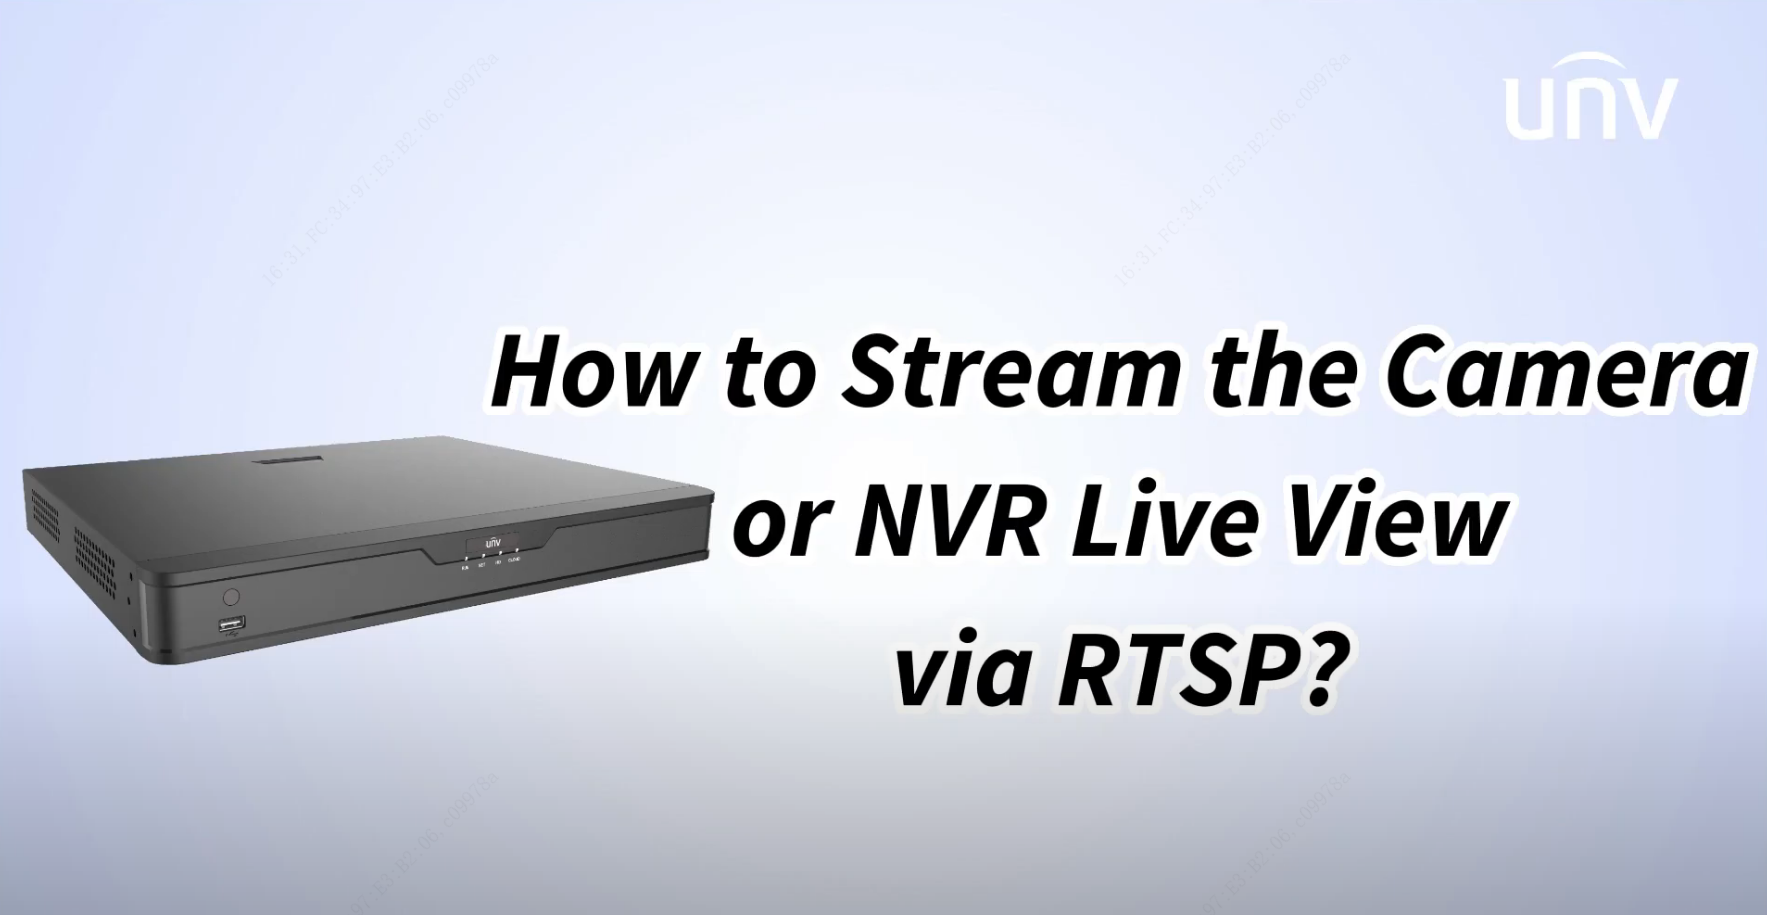 Stream Cameras or NVR via RTSP Image